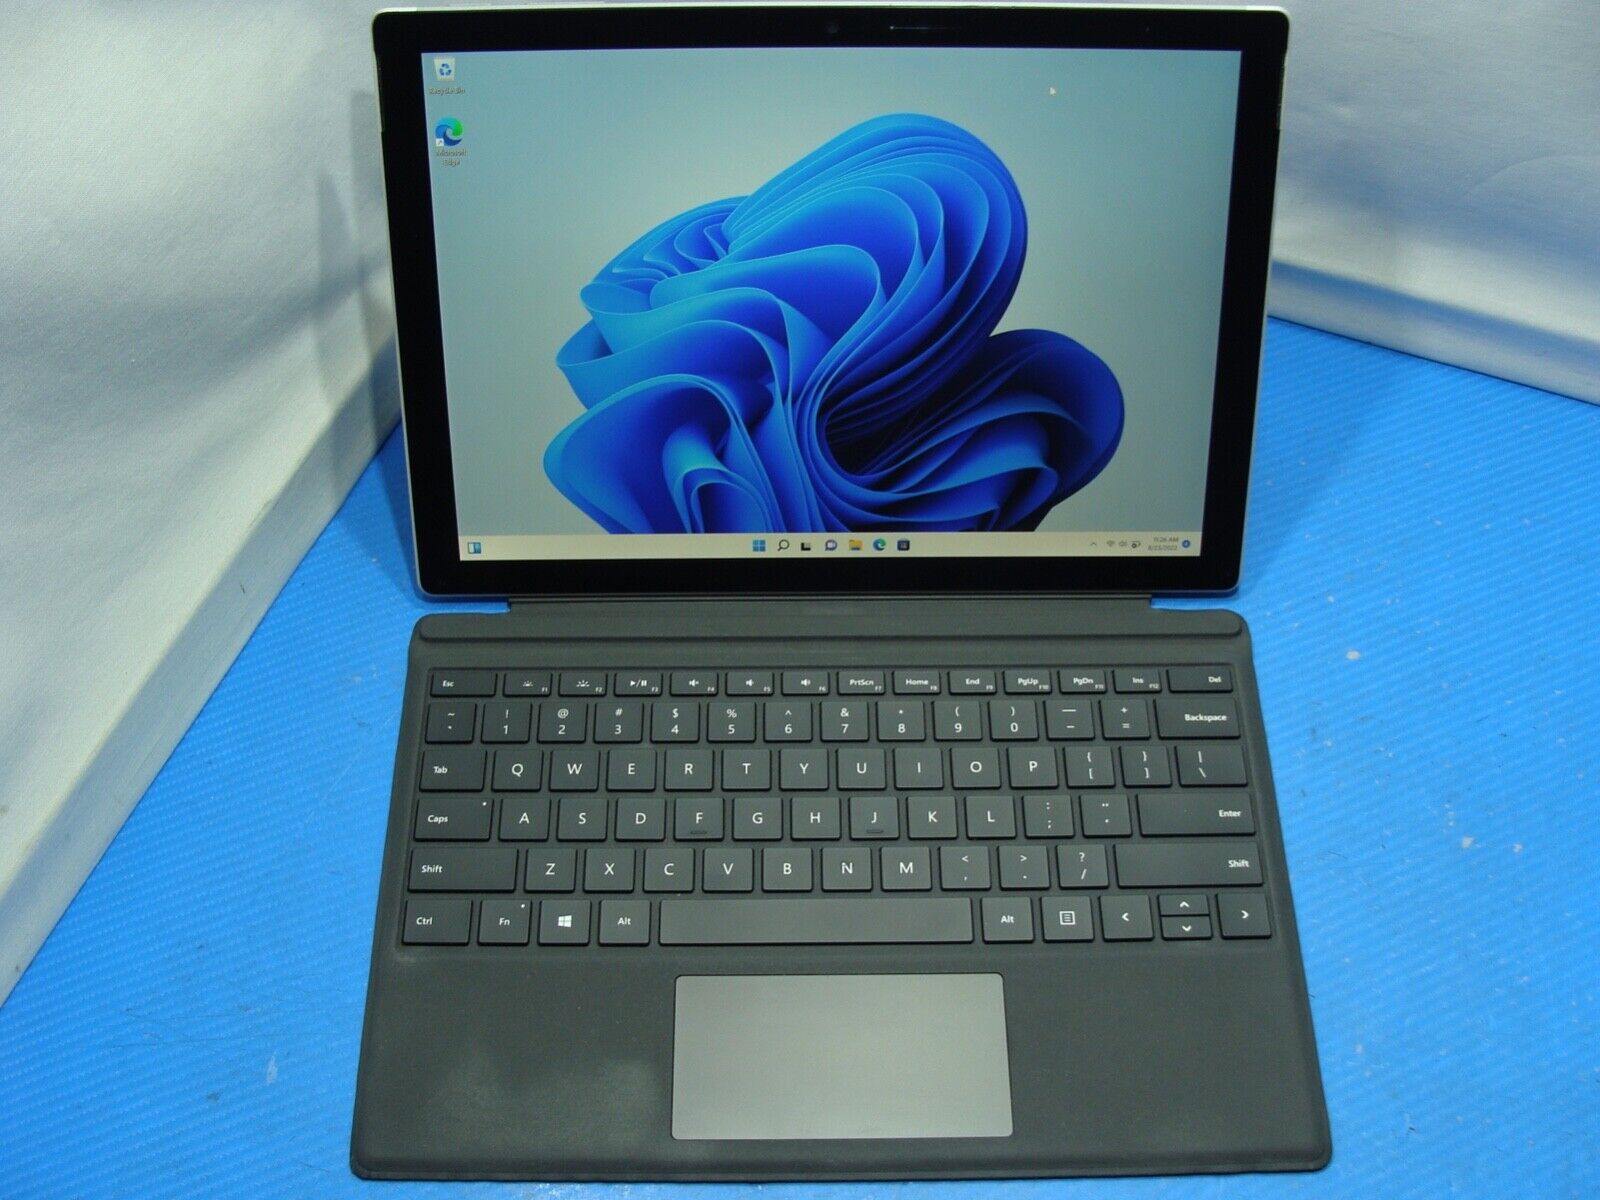 Microsoft Surface Pro 7 1866 i3-1005G1 1.20GHz 4GB DDR4 128GB SSD w/keyboard